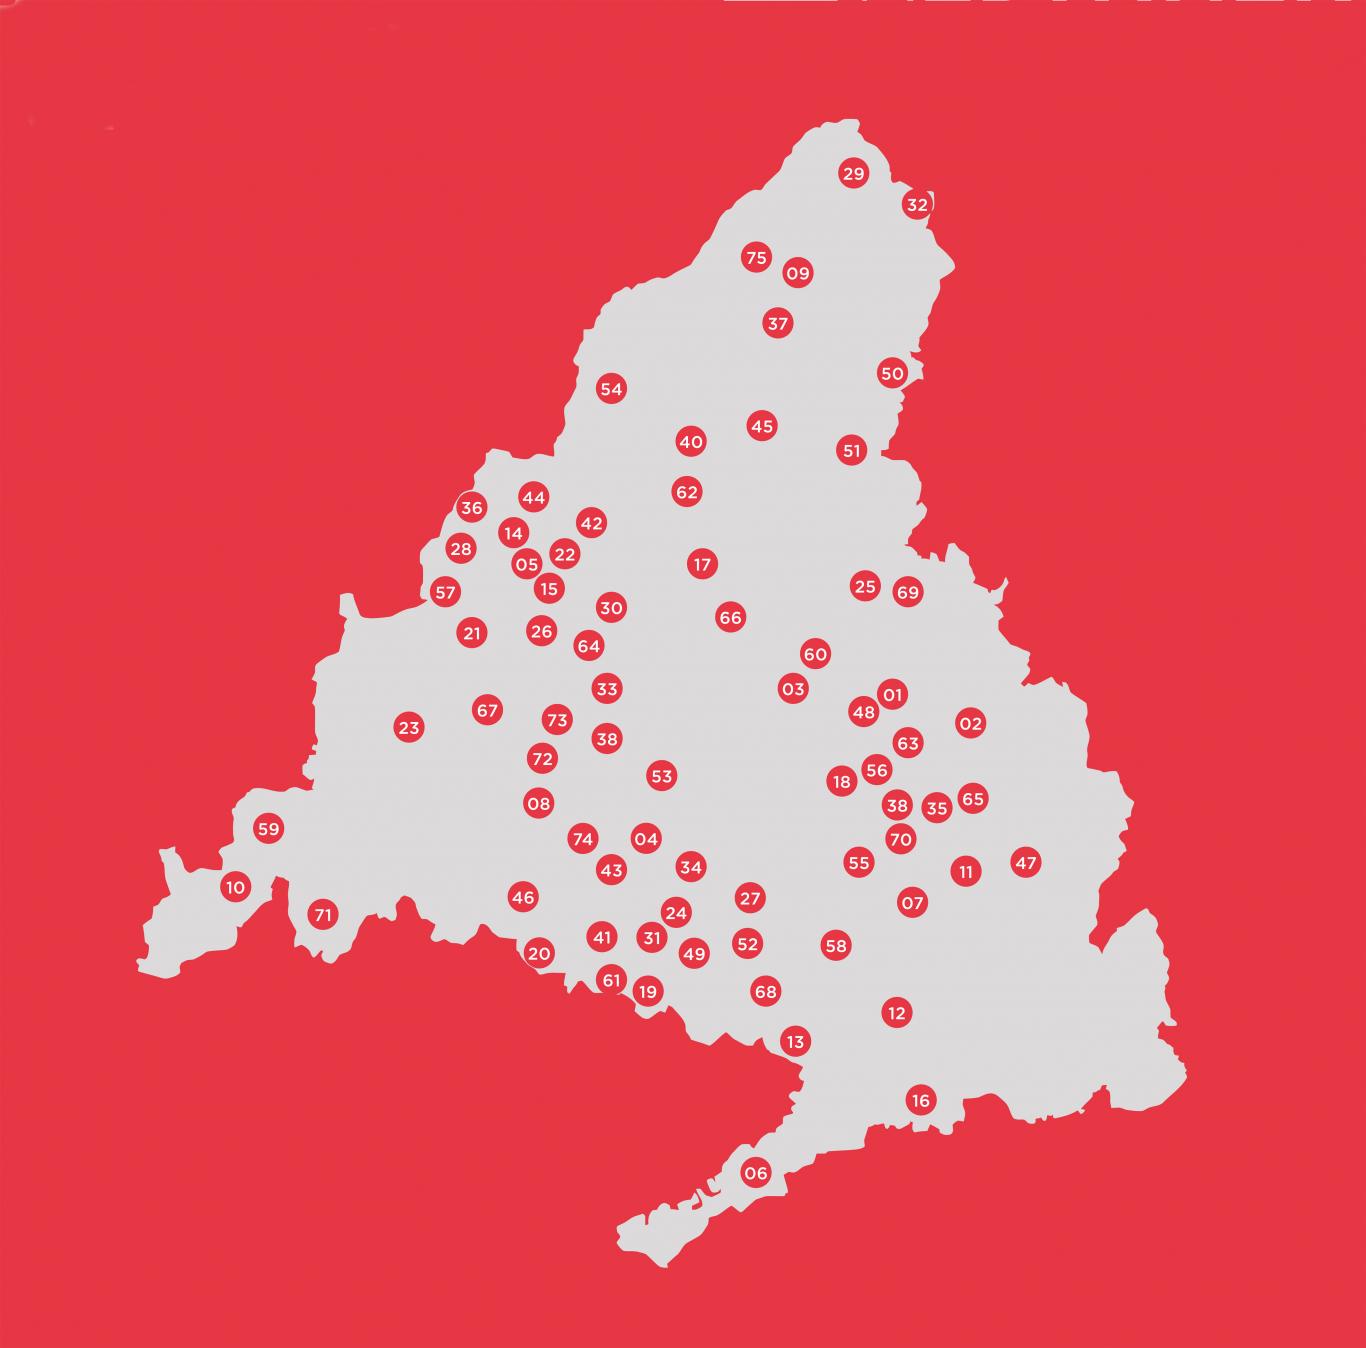 Mapa de la regisón con puntos marcando municipios